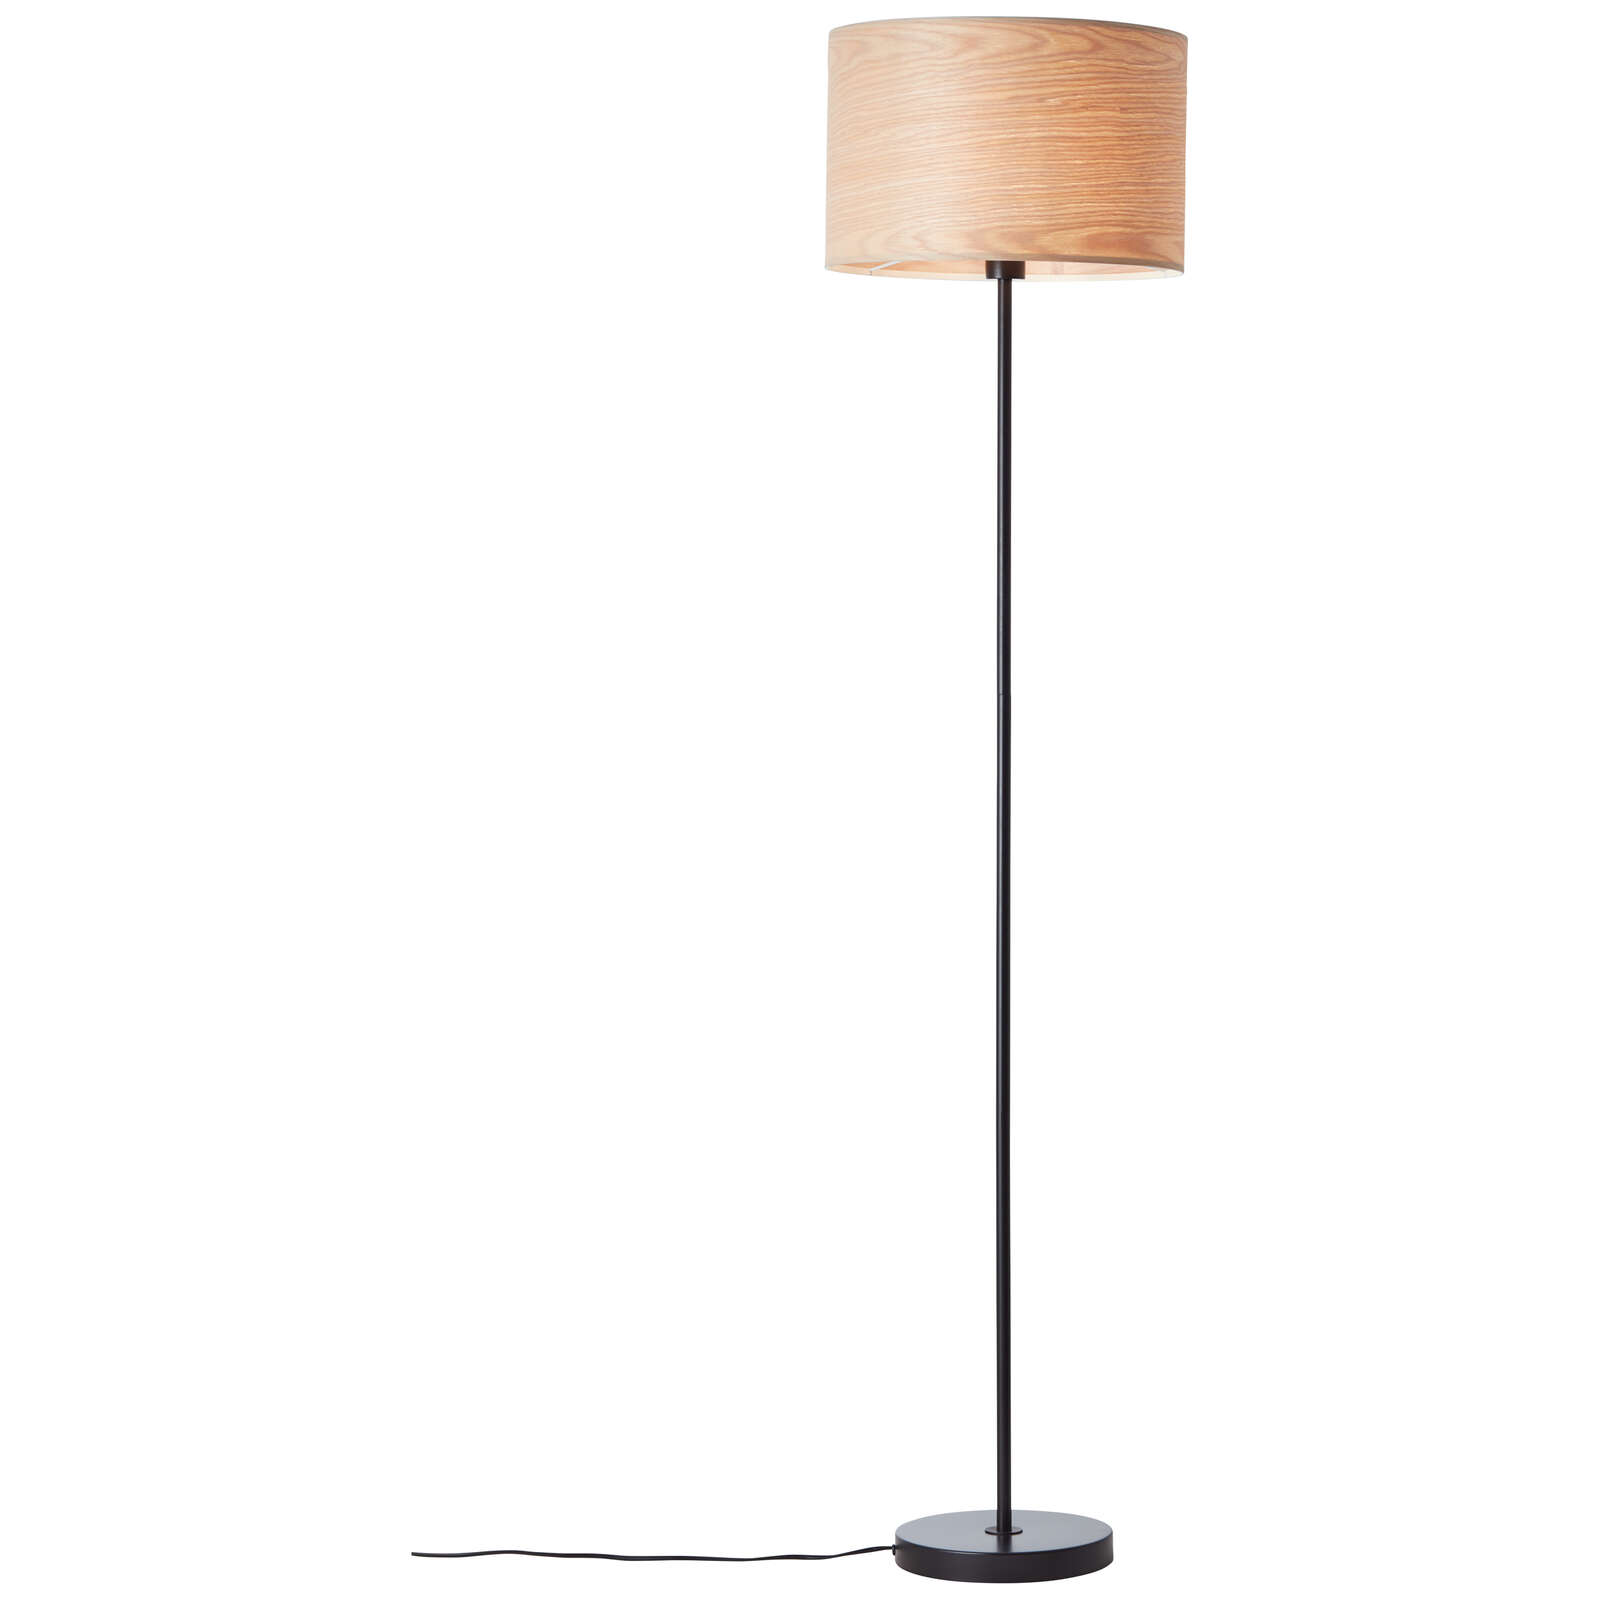             Wooden floor lamp - Michael 4 - Beige
        